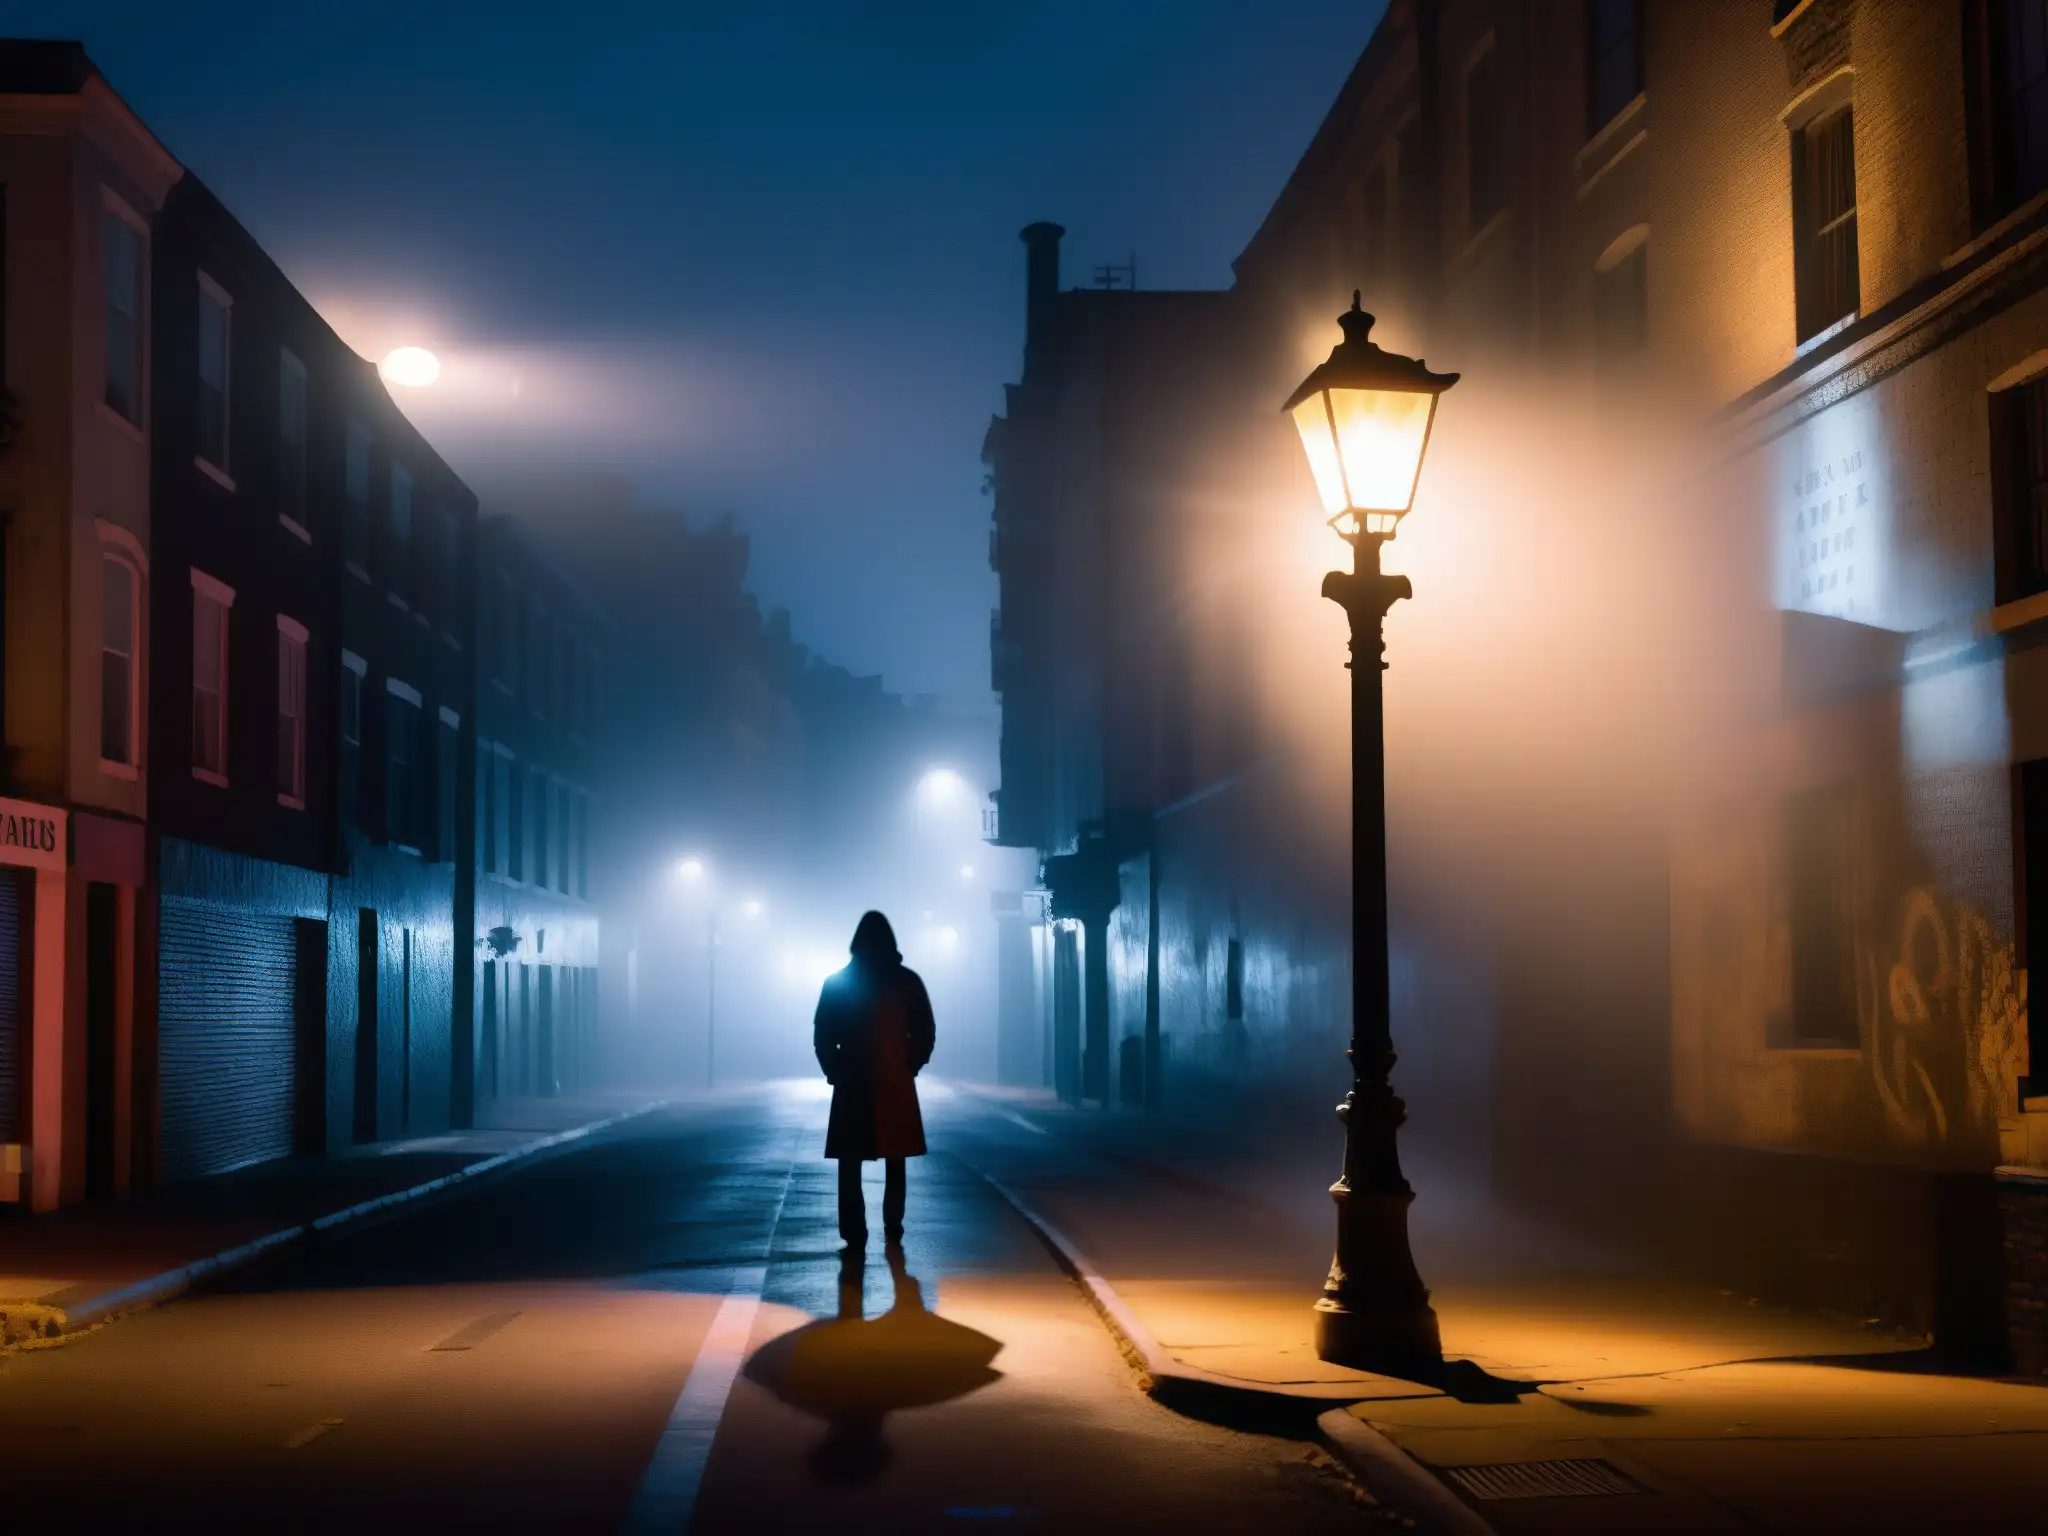 Un misterioso personaje bajo la luz de una calle en penumbras, rodeado de niebla y graffiti, evocando el impacto de leyendas urbanas en conducta